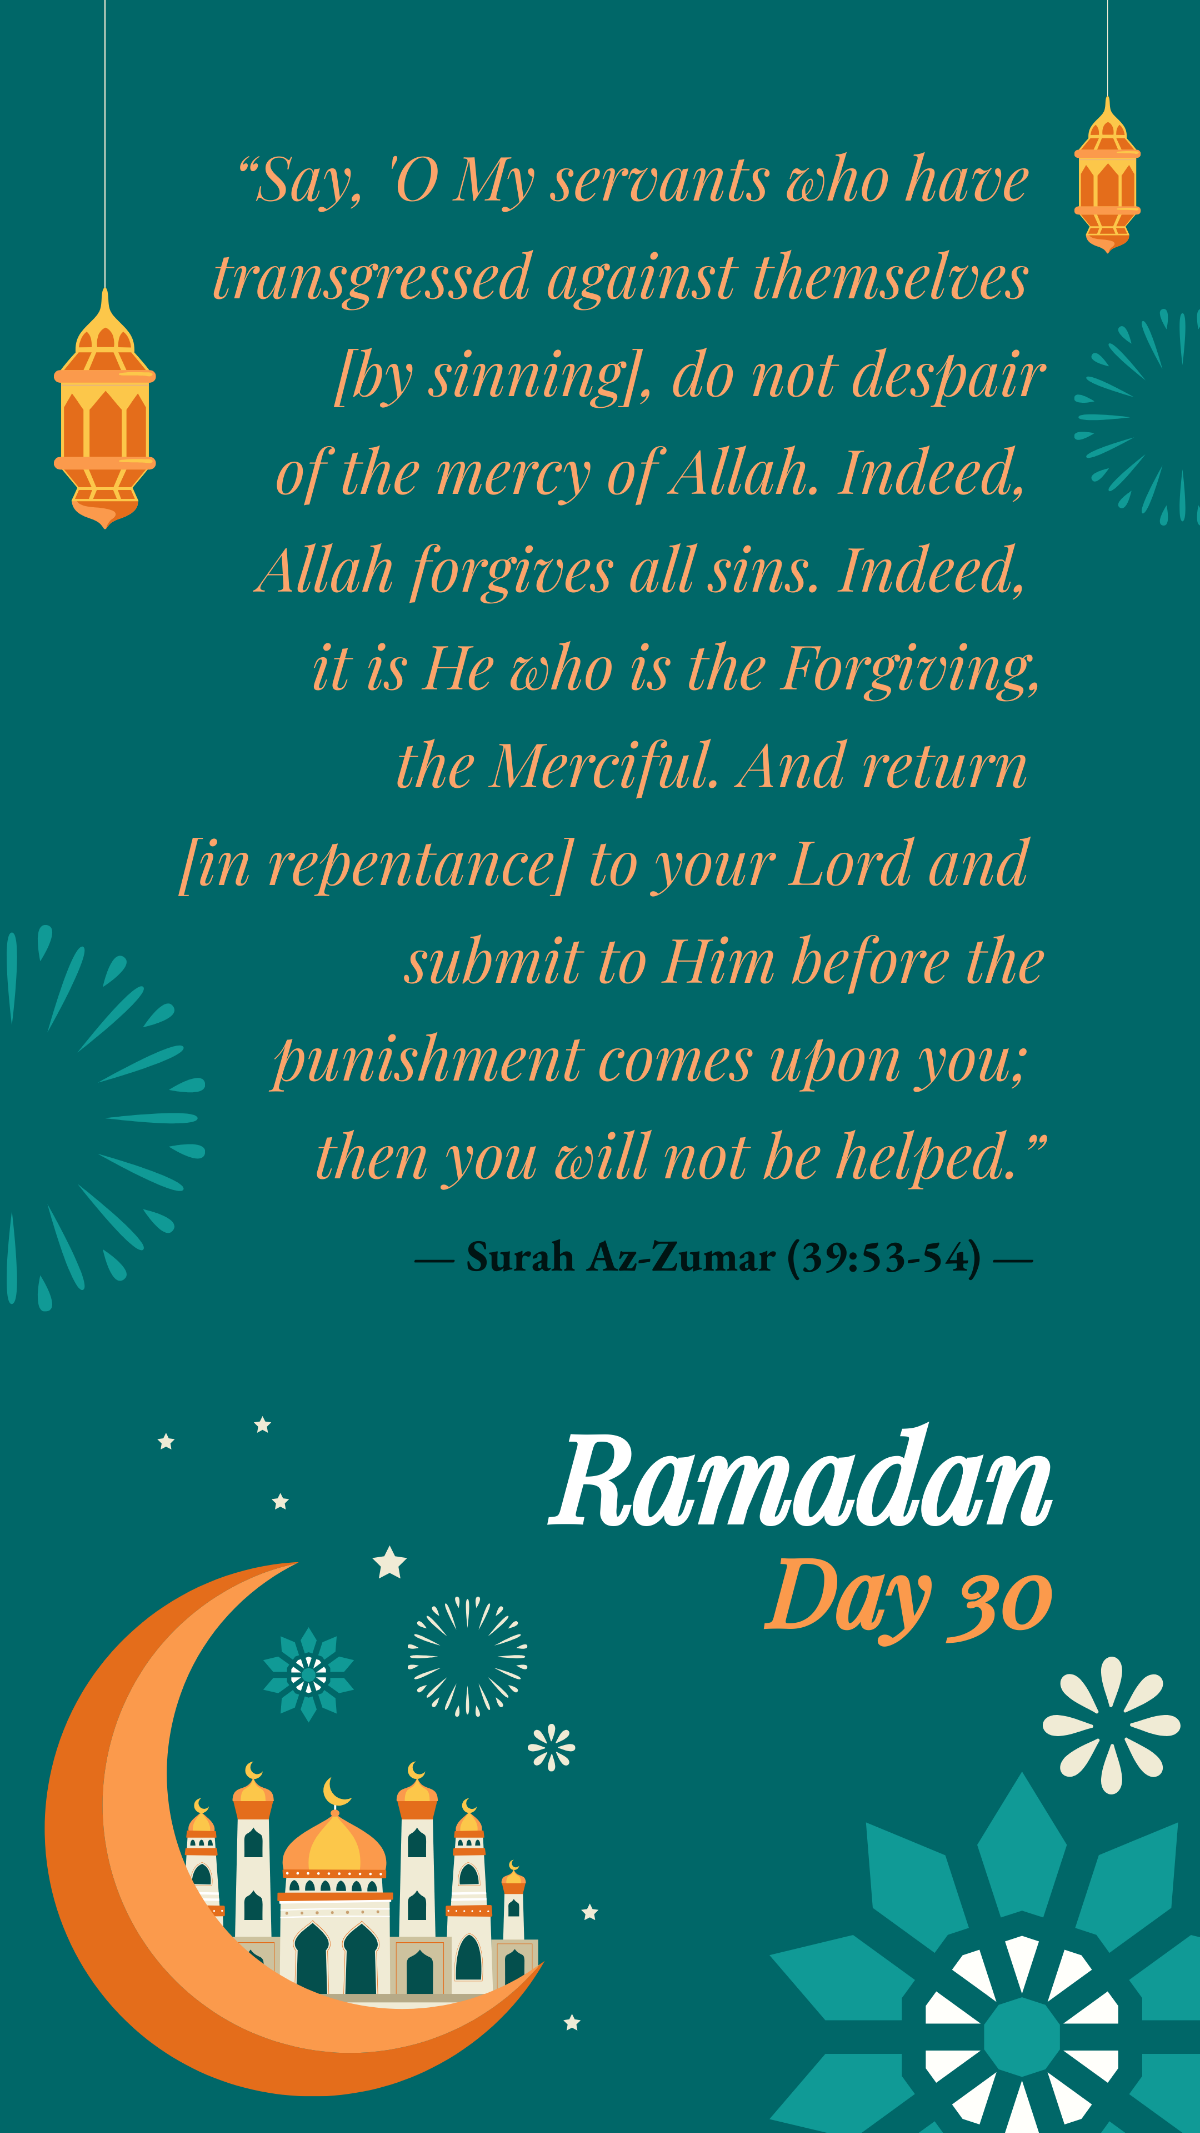 Ramadan Day 30 Template